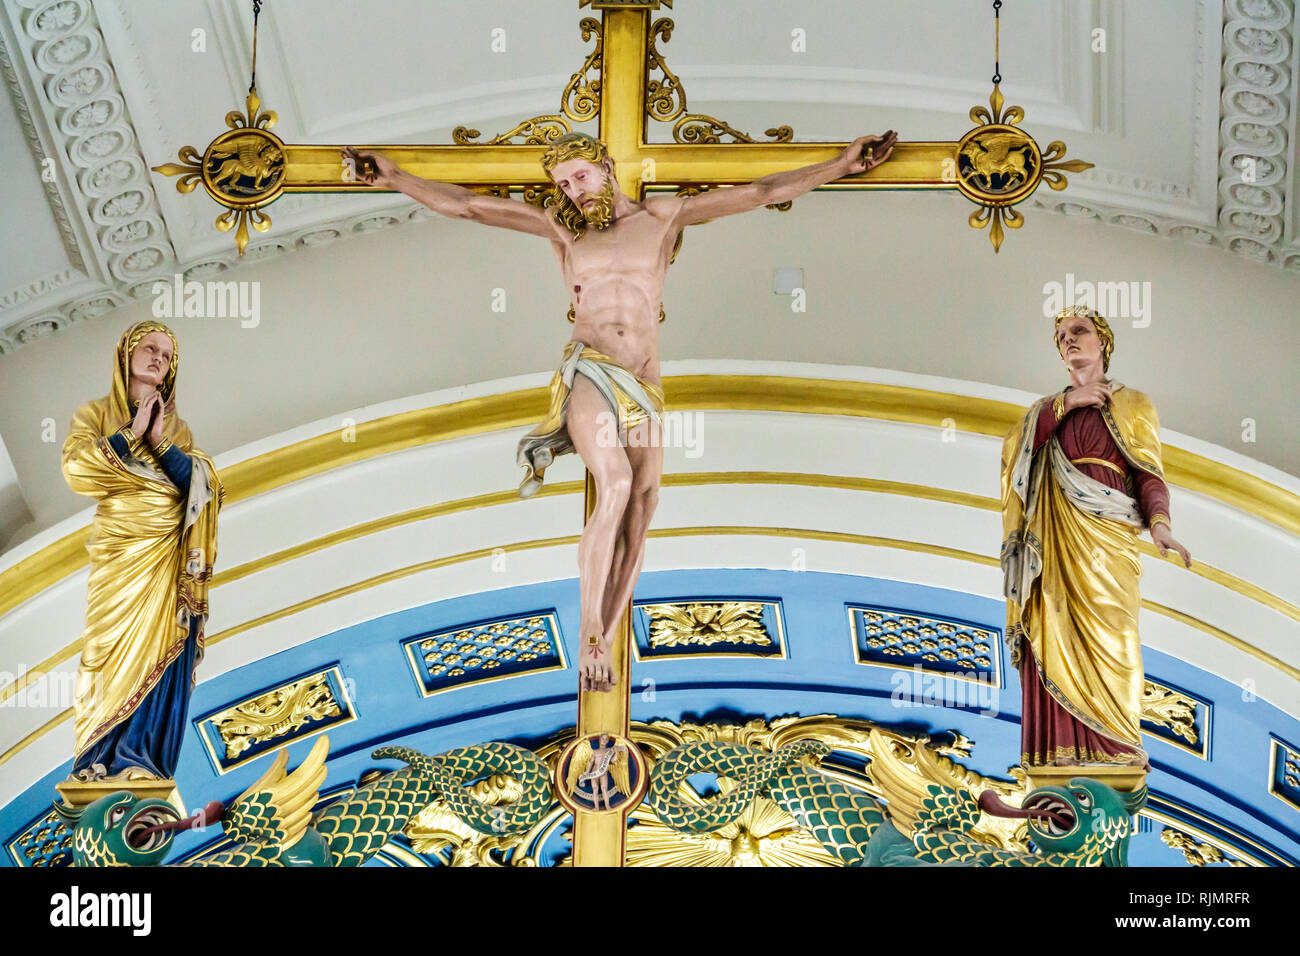 Vereinigtes Königreich Großbritannien England London Westminster Mayfair Grosvenor Chapel Anglikanische Kirche Innenraum Hochaltar Kruzifix gekreuzigt Chris Stockfoto